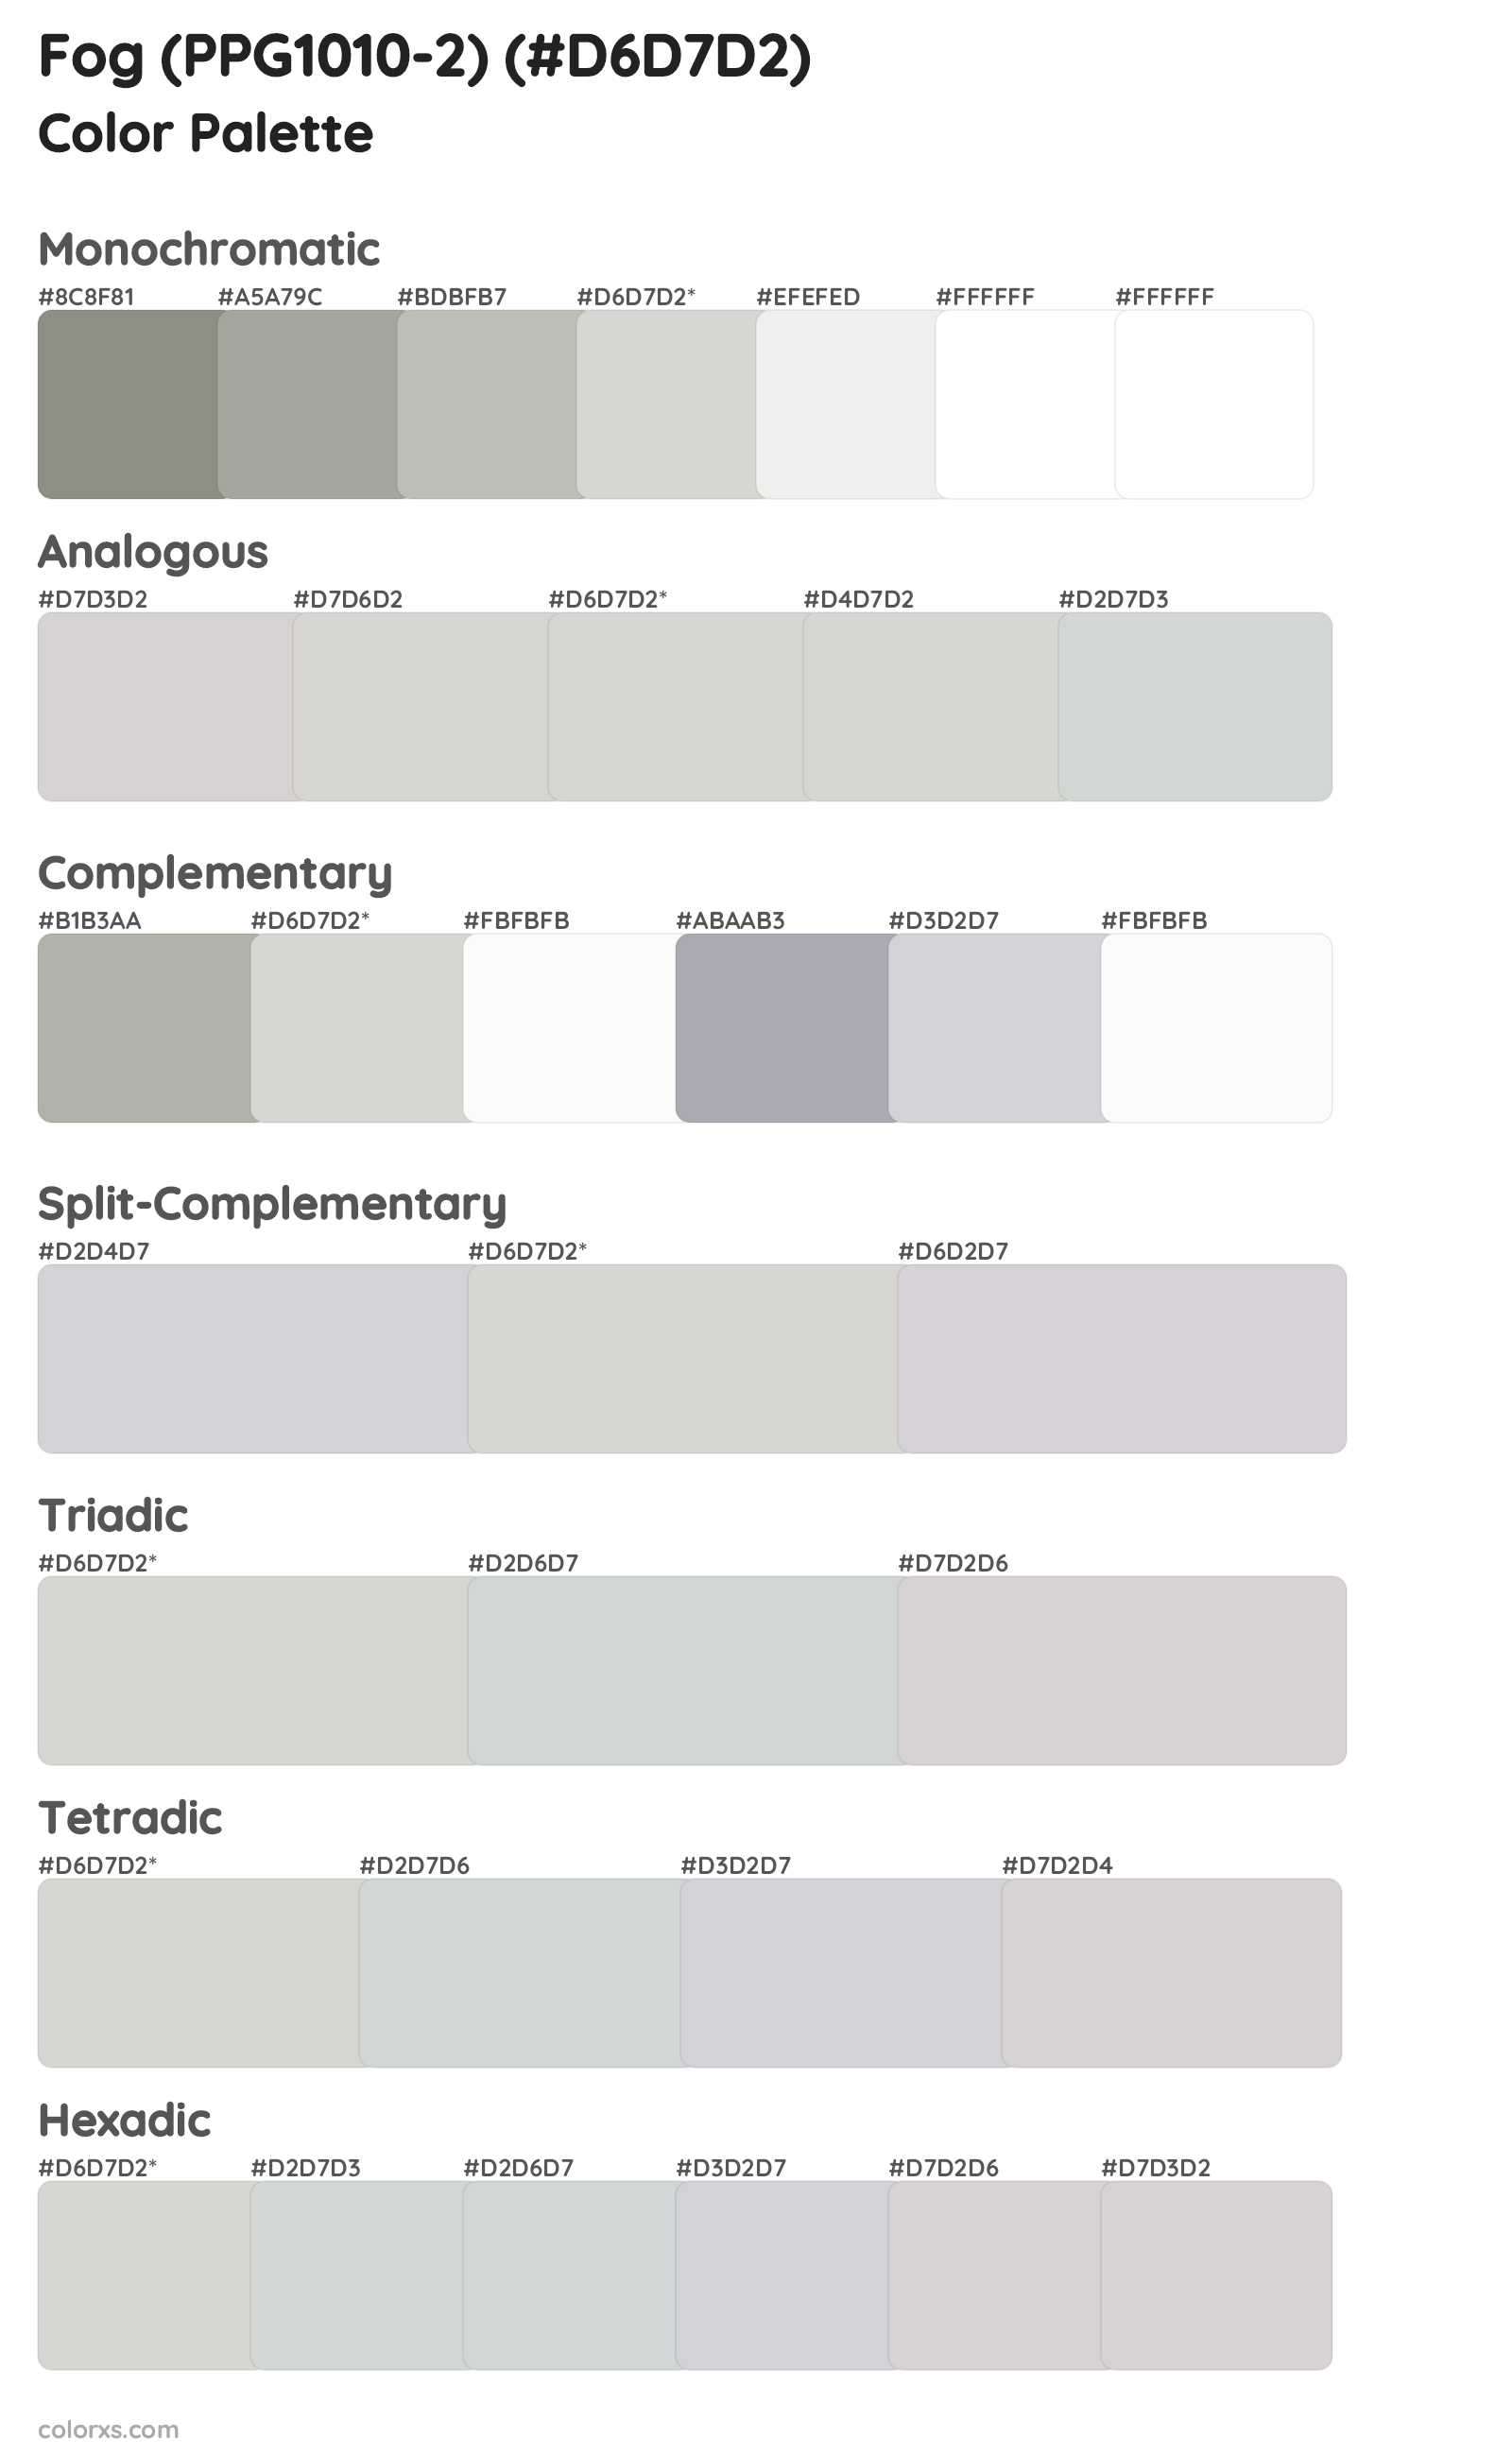 Fog (PPG1010-2) Color Scheme Palettes